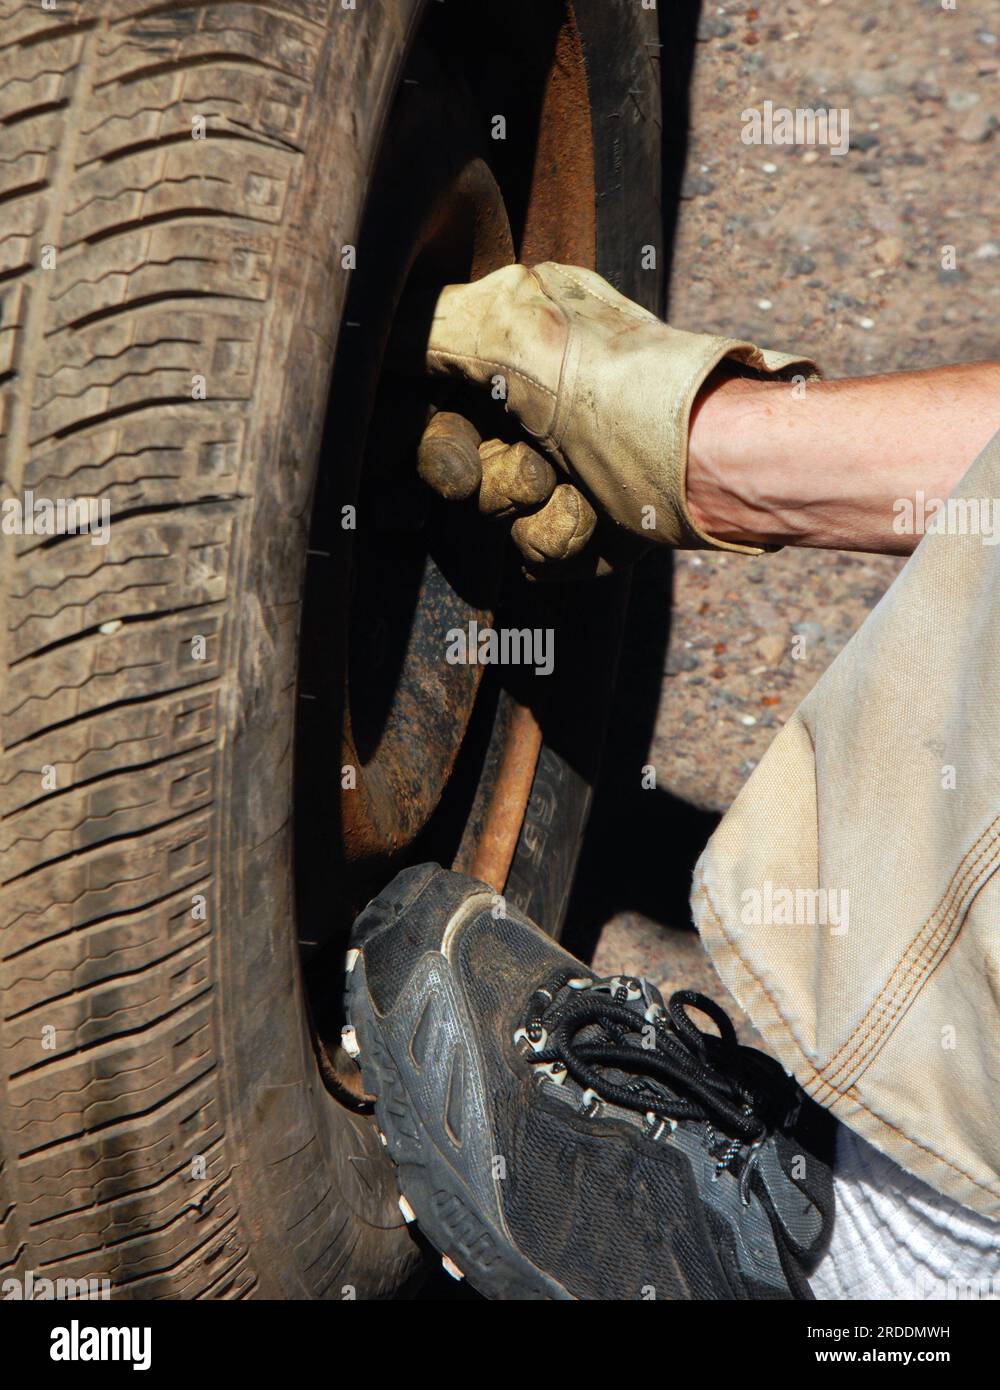 La main d'un homme se boulonne sur une roue de secours après un éclatement. Le pied revêtu de sneaker maintient la pression sur le dessous du pneu. Banque D'Images